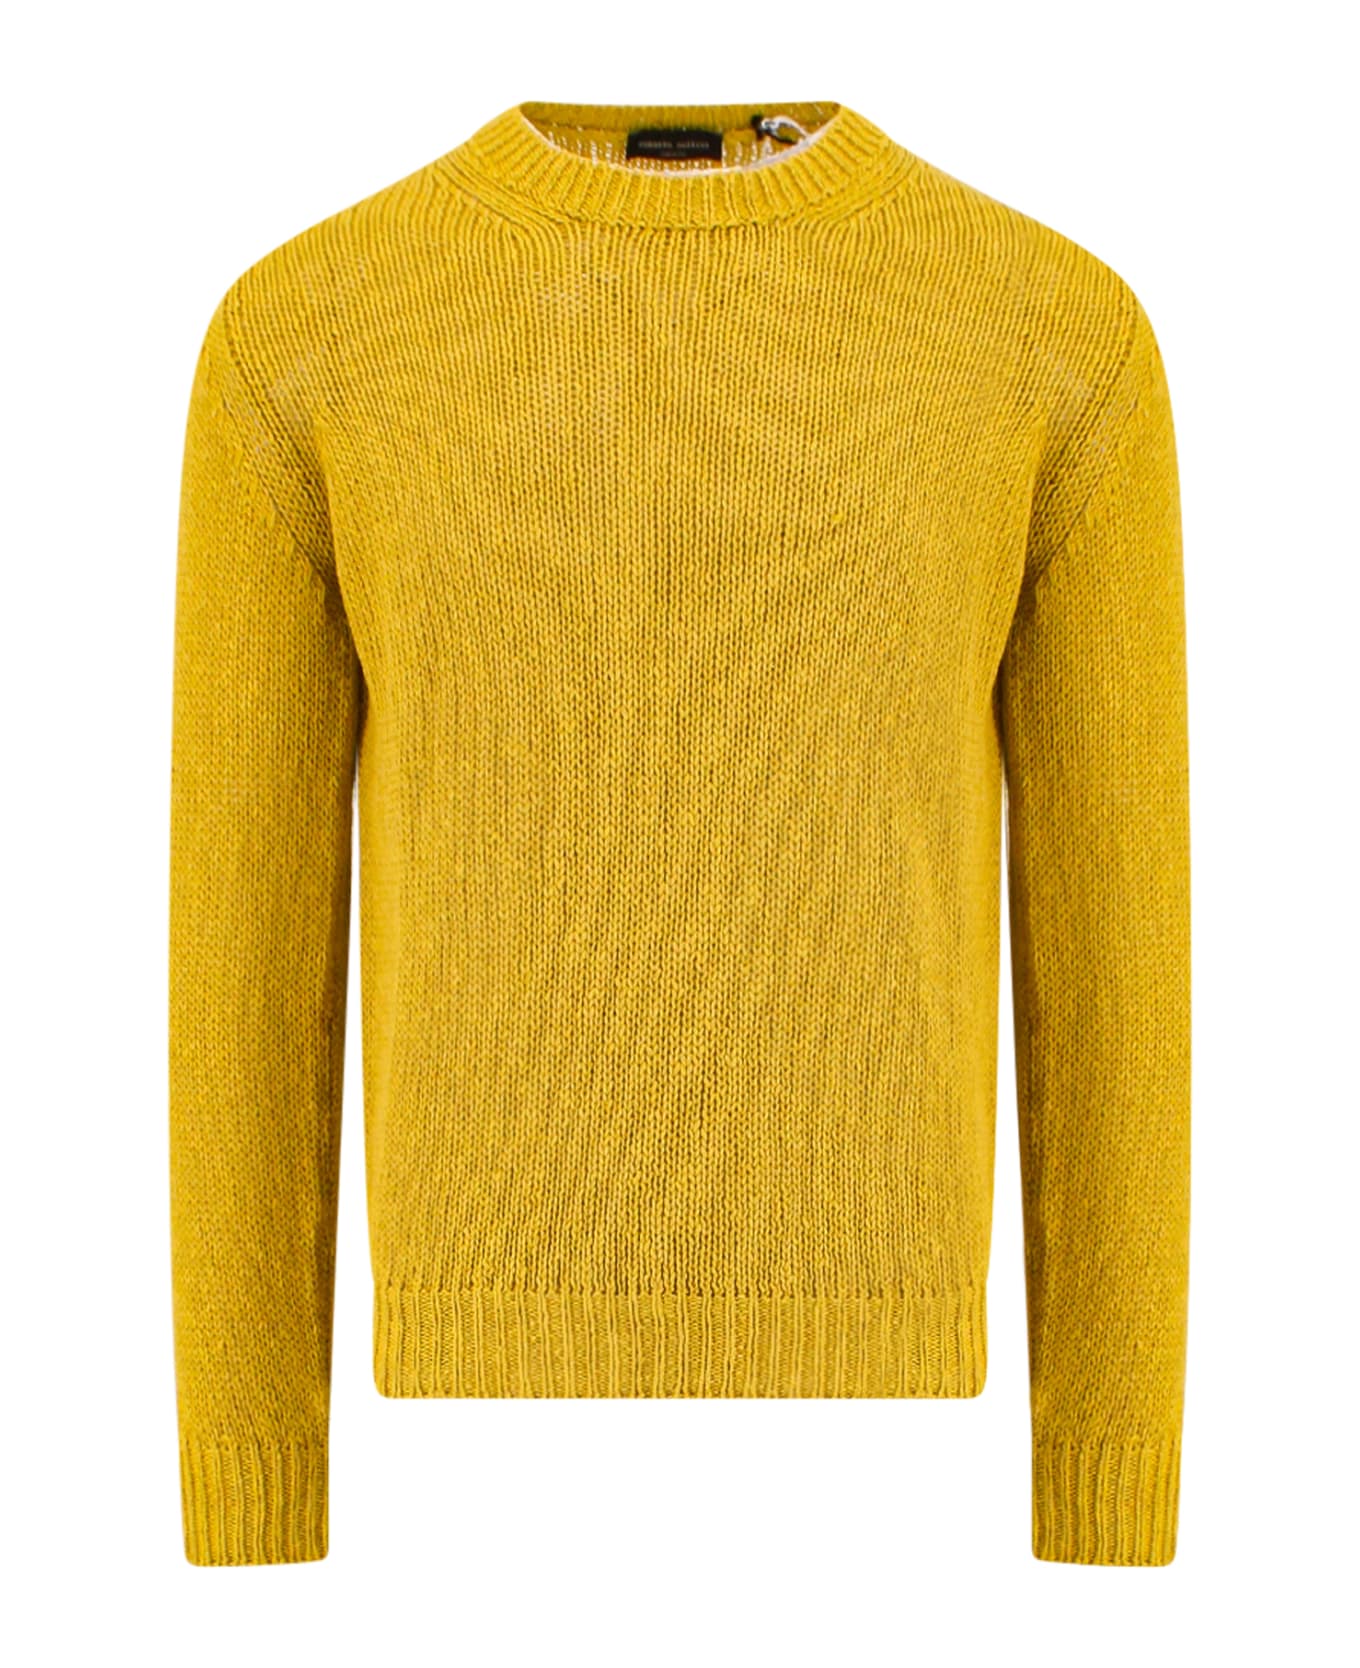 Roberto Collina Sweater - Yellow